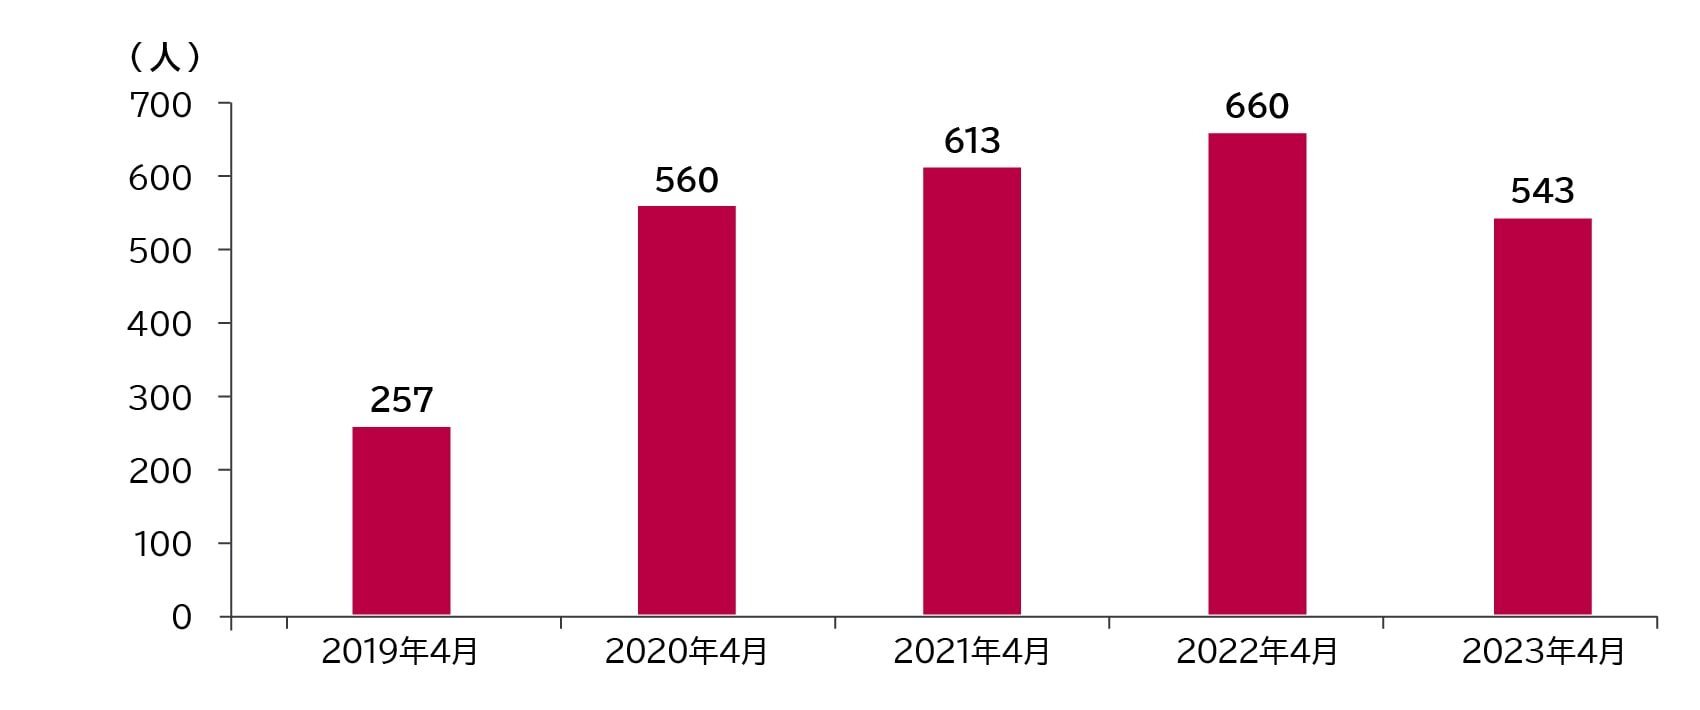 新卒薬剤師 採用人数：2019年4月 257人、2020年4月 560人、2021年4月 613人、2022年4月 660人、2023年4月 543人